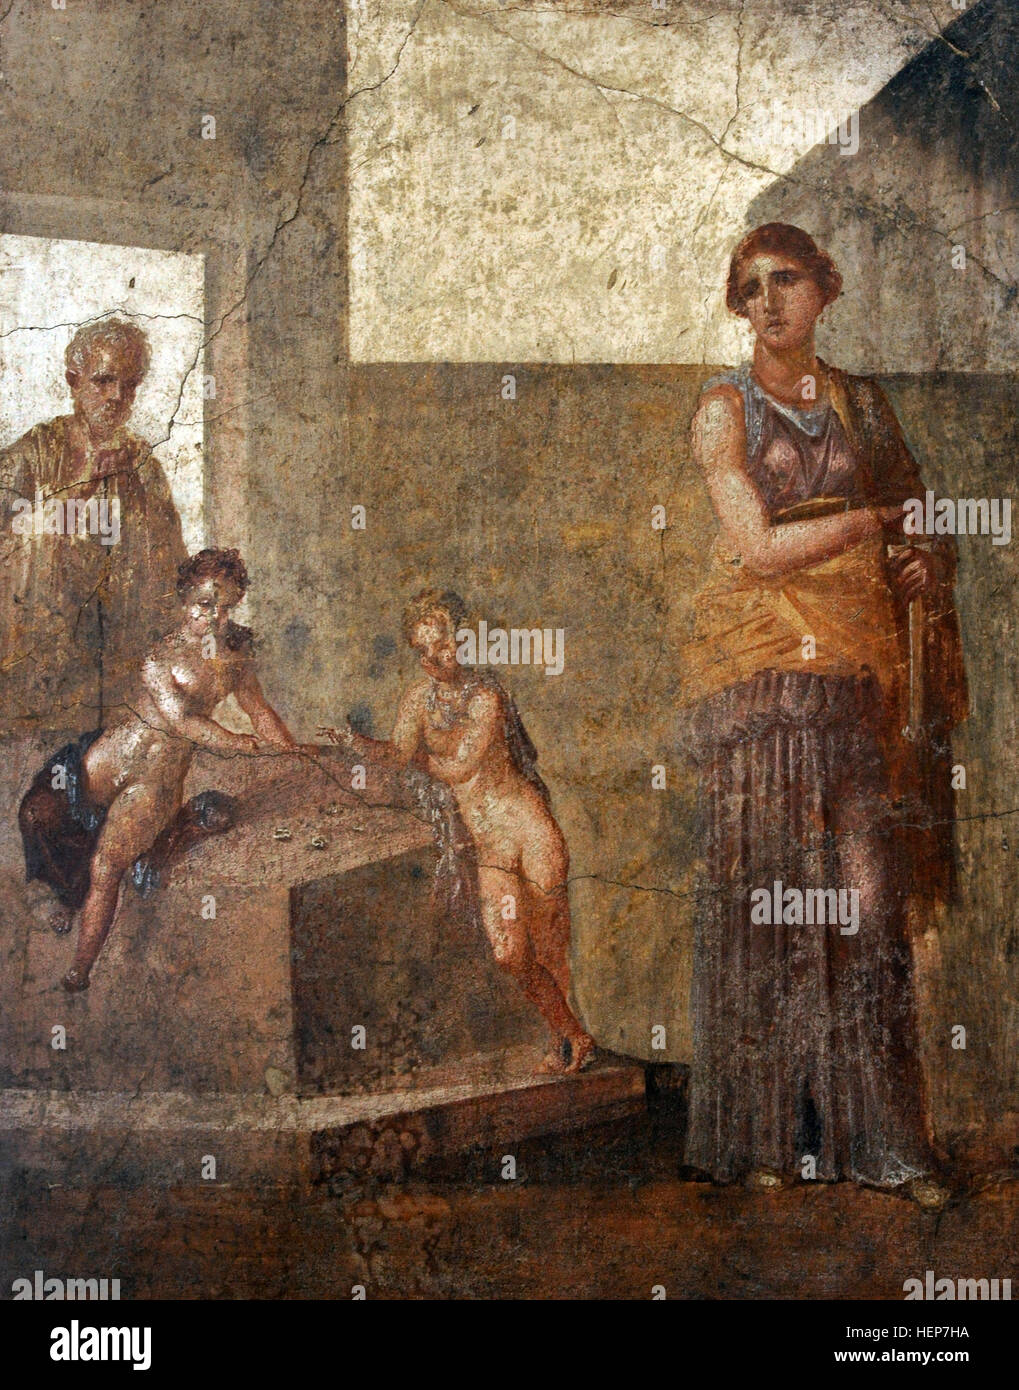 Medea und ihre Kinder. Sie betrachtet ihre Kinder töten als den besten Weg Ehemann Jason zu verletzen. Haus der Dioskuren, Pompeji, Italien. 1. Nationales Archäologisches Museum, Neapel. Italien. Stockfoto